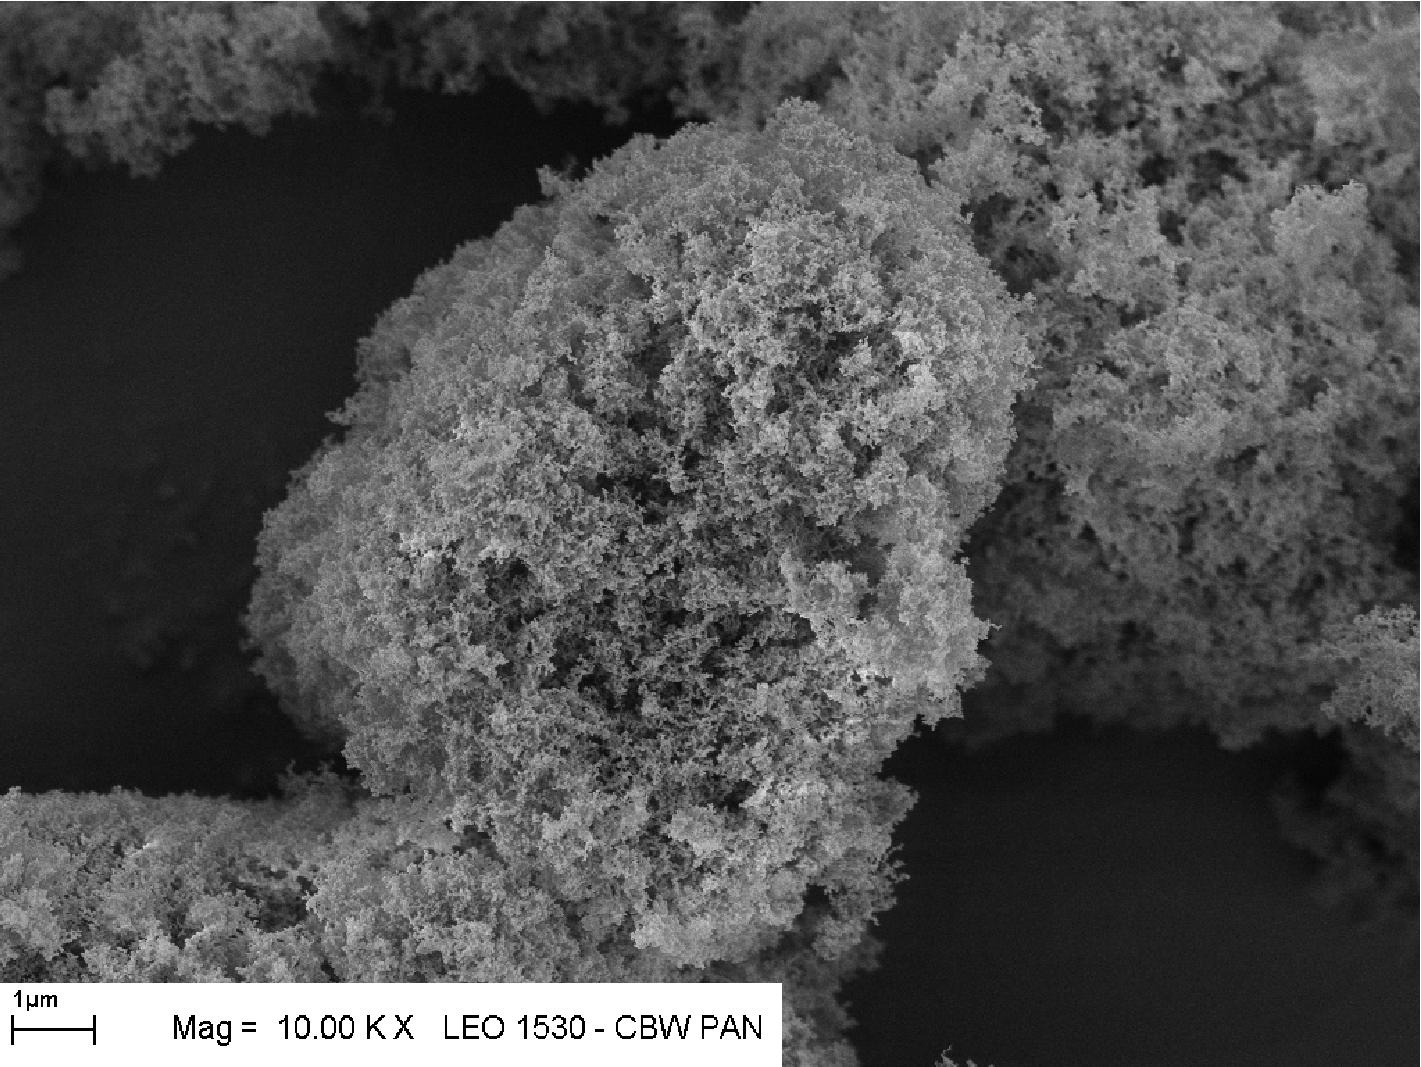 Ziarna fraktalne mogą być bardzo duże
chociaż składają się z nanokryształów. Zachowują własności właściwe
dla skali nano pomimo, że widać je gołym okiem (to na zdjęciu ma ok. 